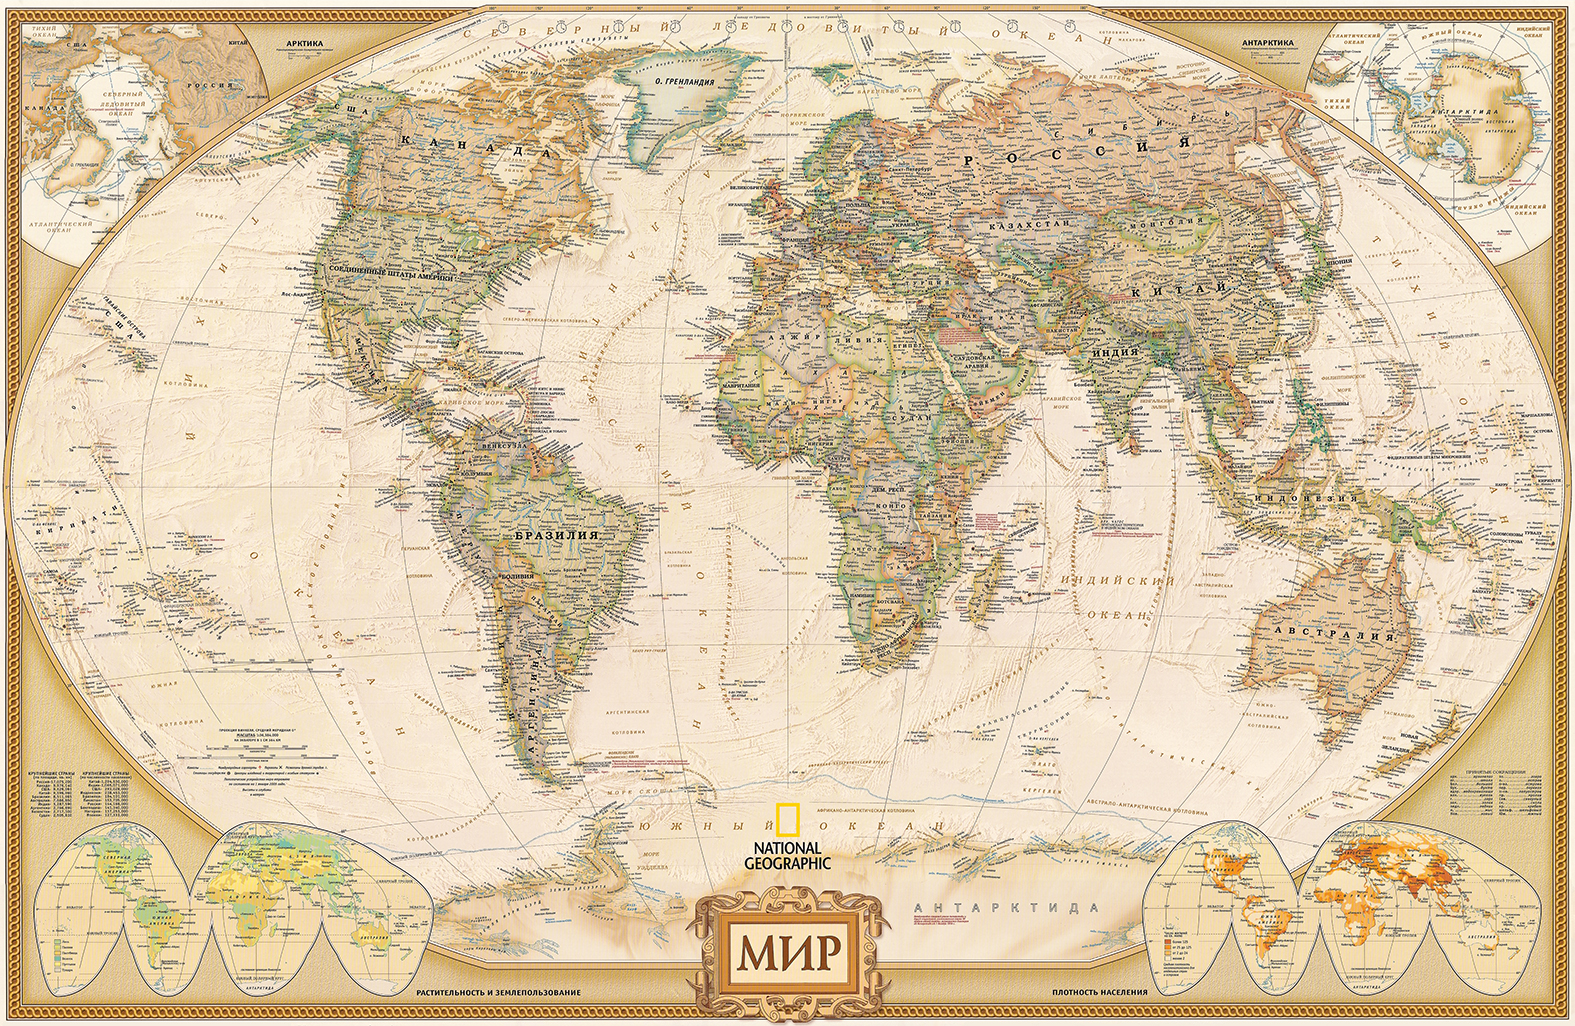 Фотообои Photostena Карта мира 3 x 2 м подарочная карта твой дом номинал 3000